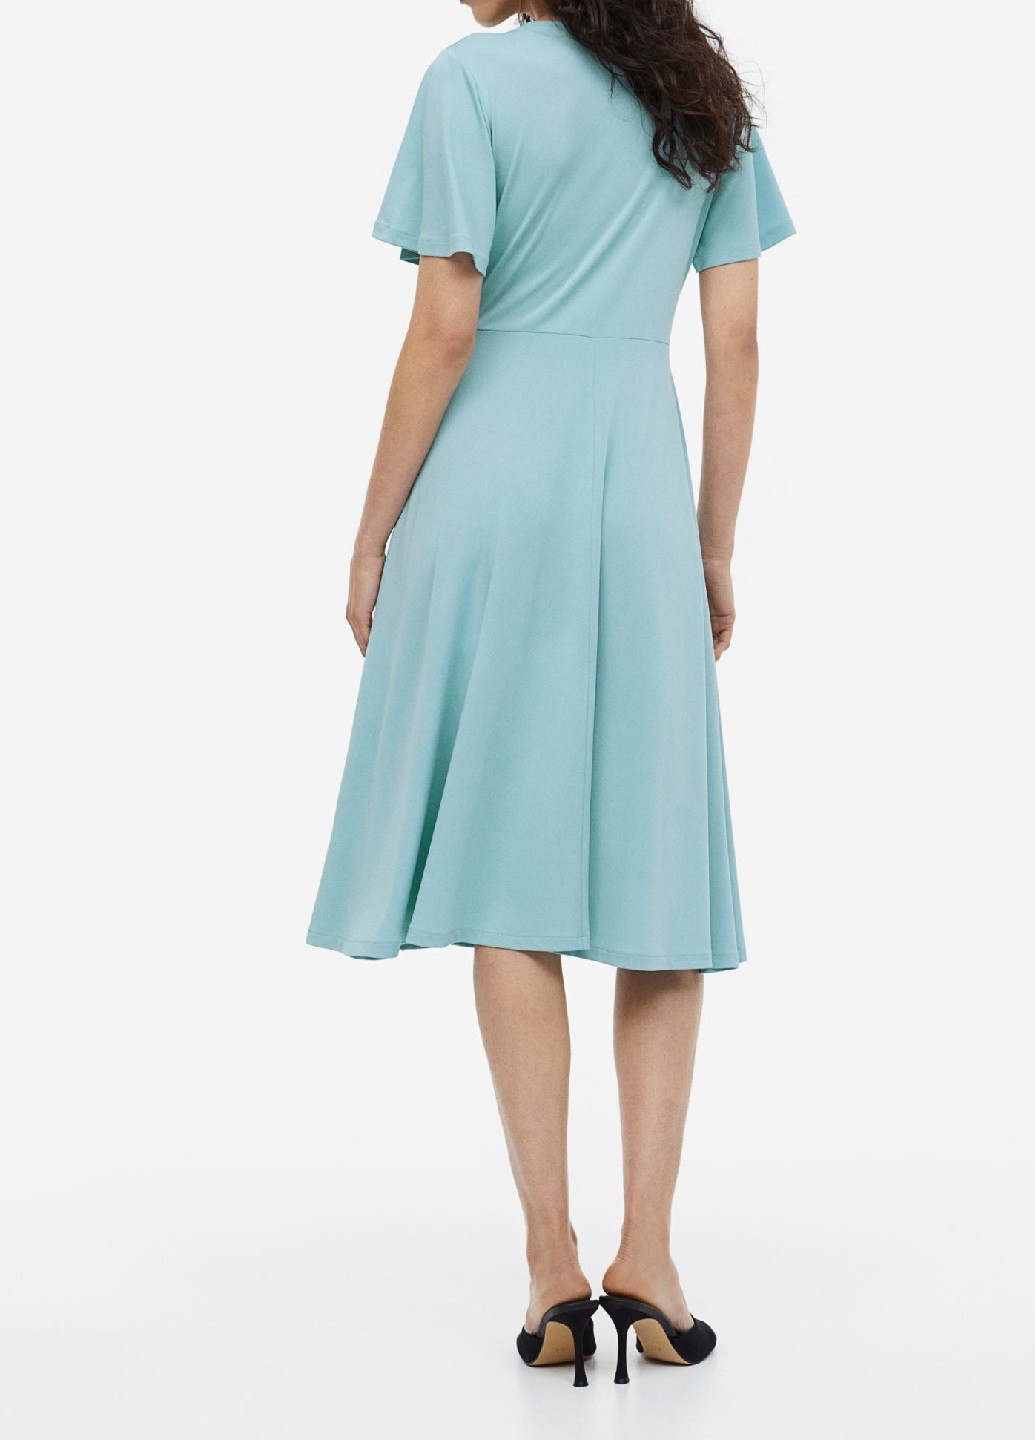 Светло-бирюзовое деловое платье H&M однотонное